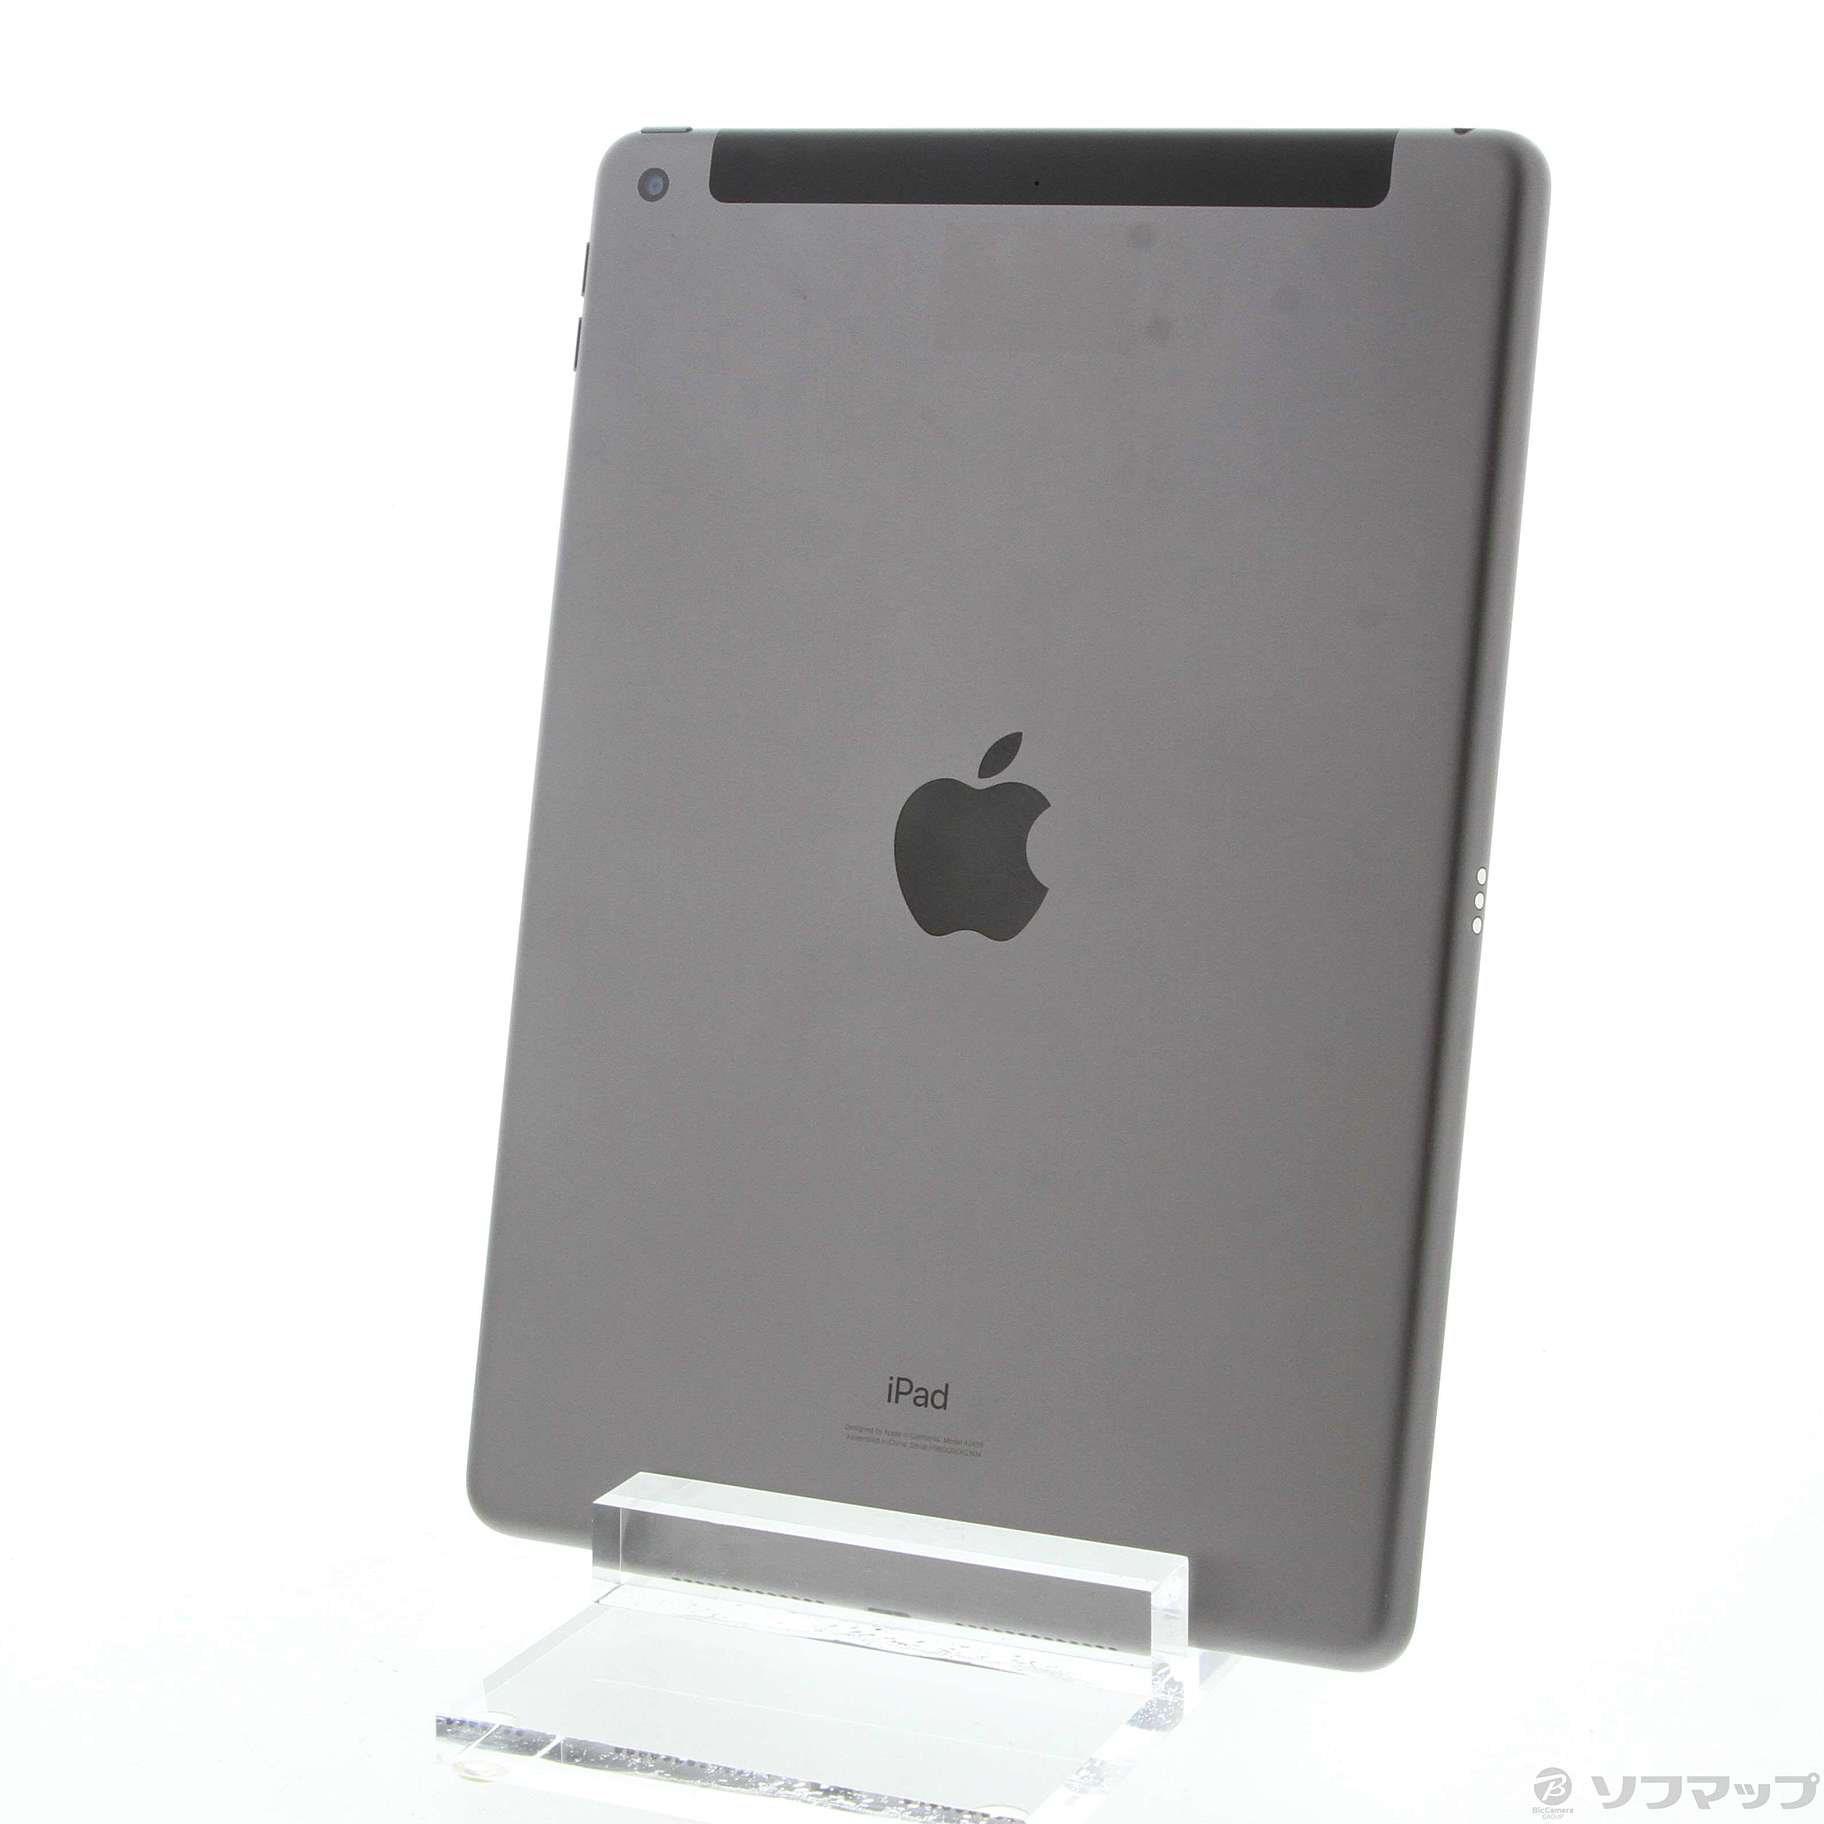 中古品无iPad第8代32GB空间灰色MYMH2J/A SIM|no邮购是Sofmap[sofmap]